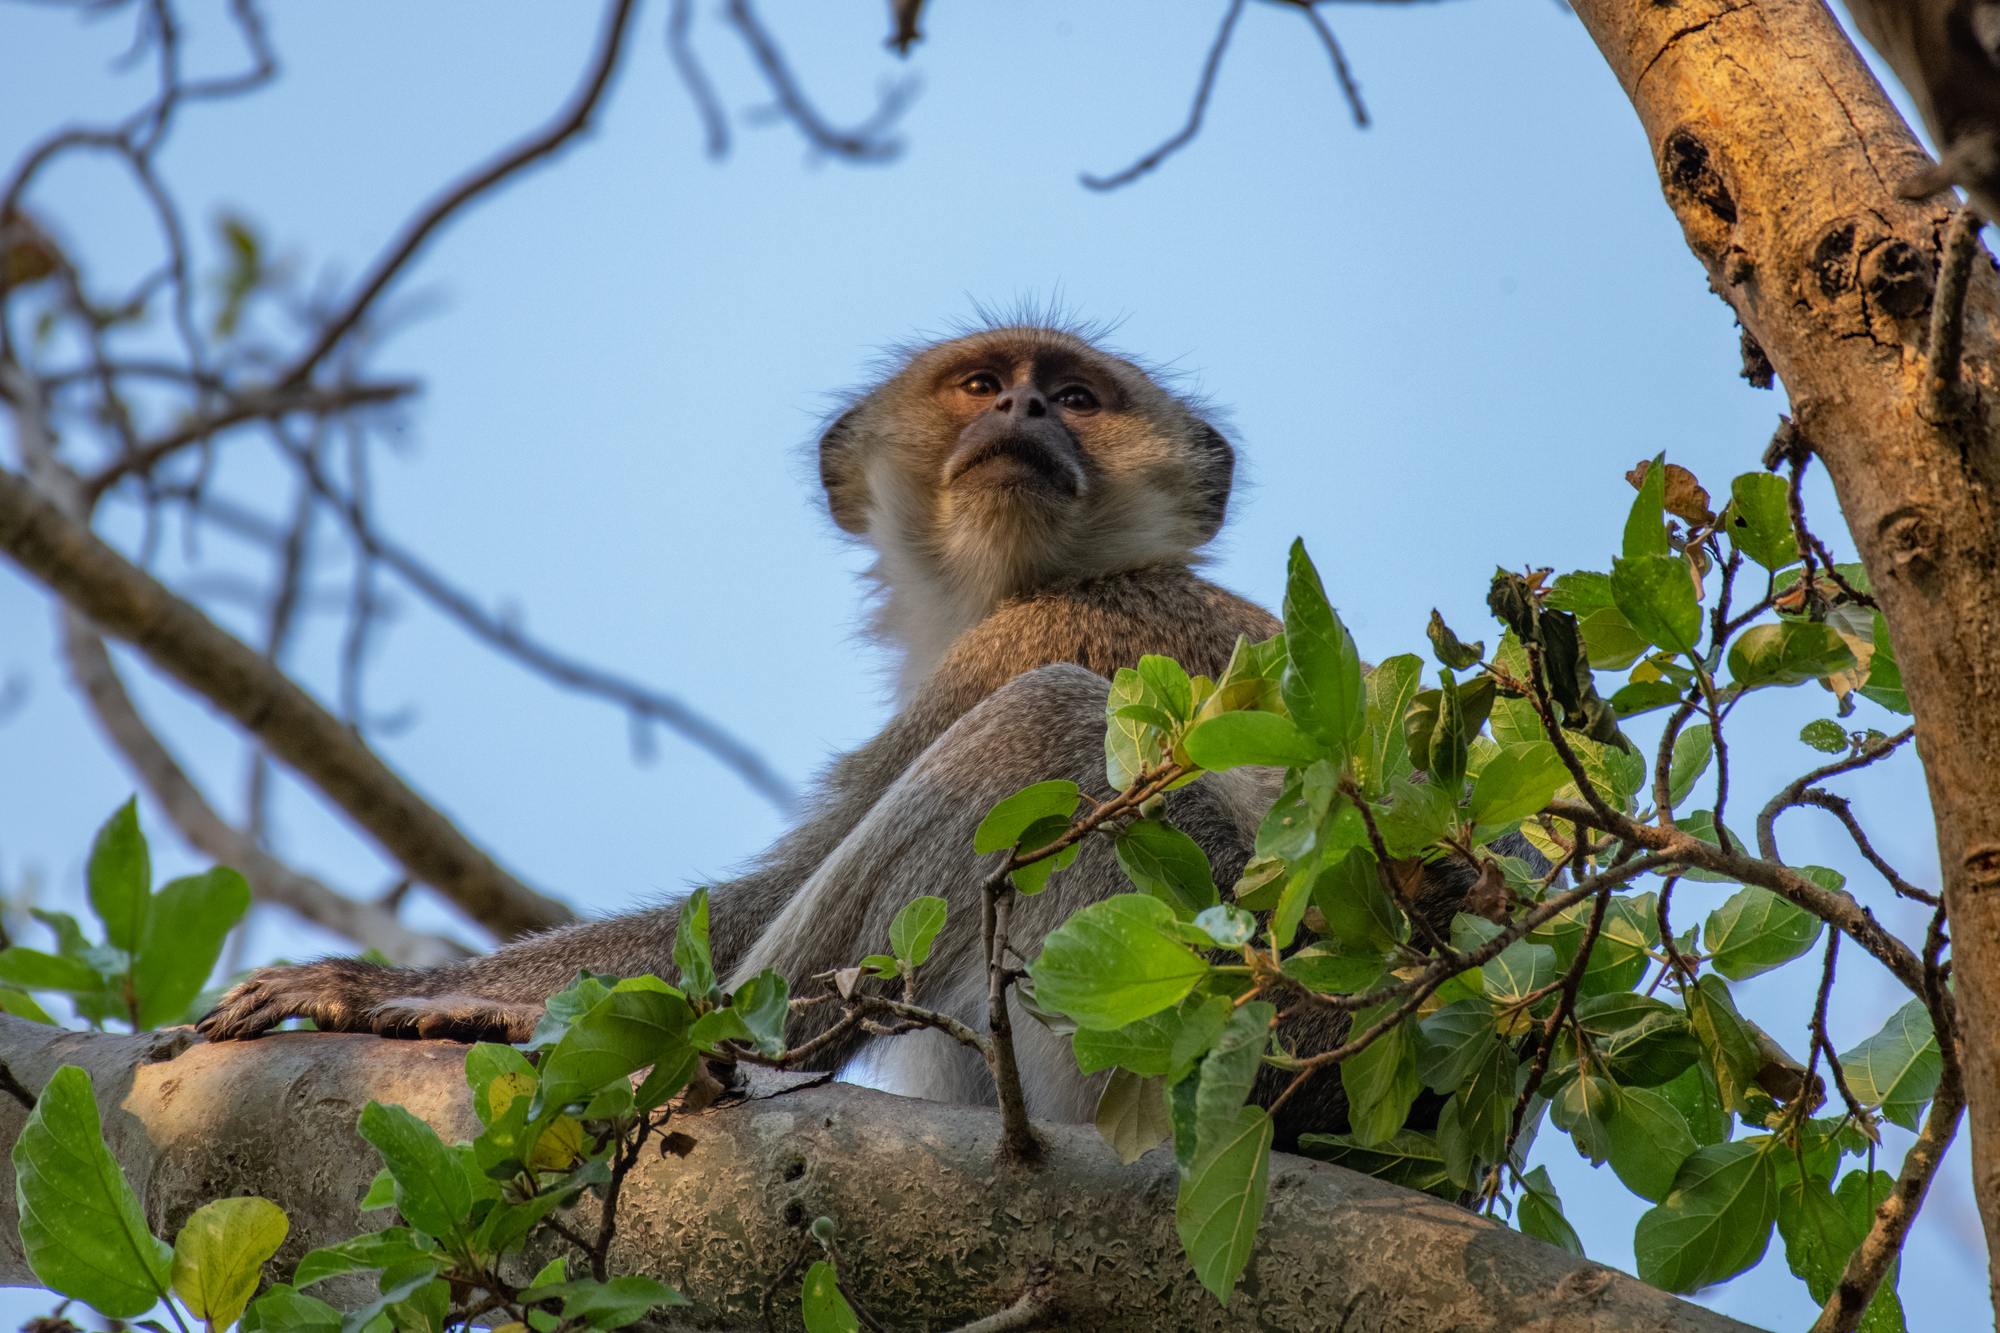 Image courtesy of Boyes - Velvet Monkey at Mabwe - Upemba National Park